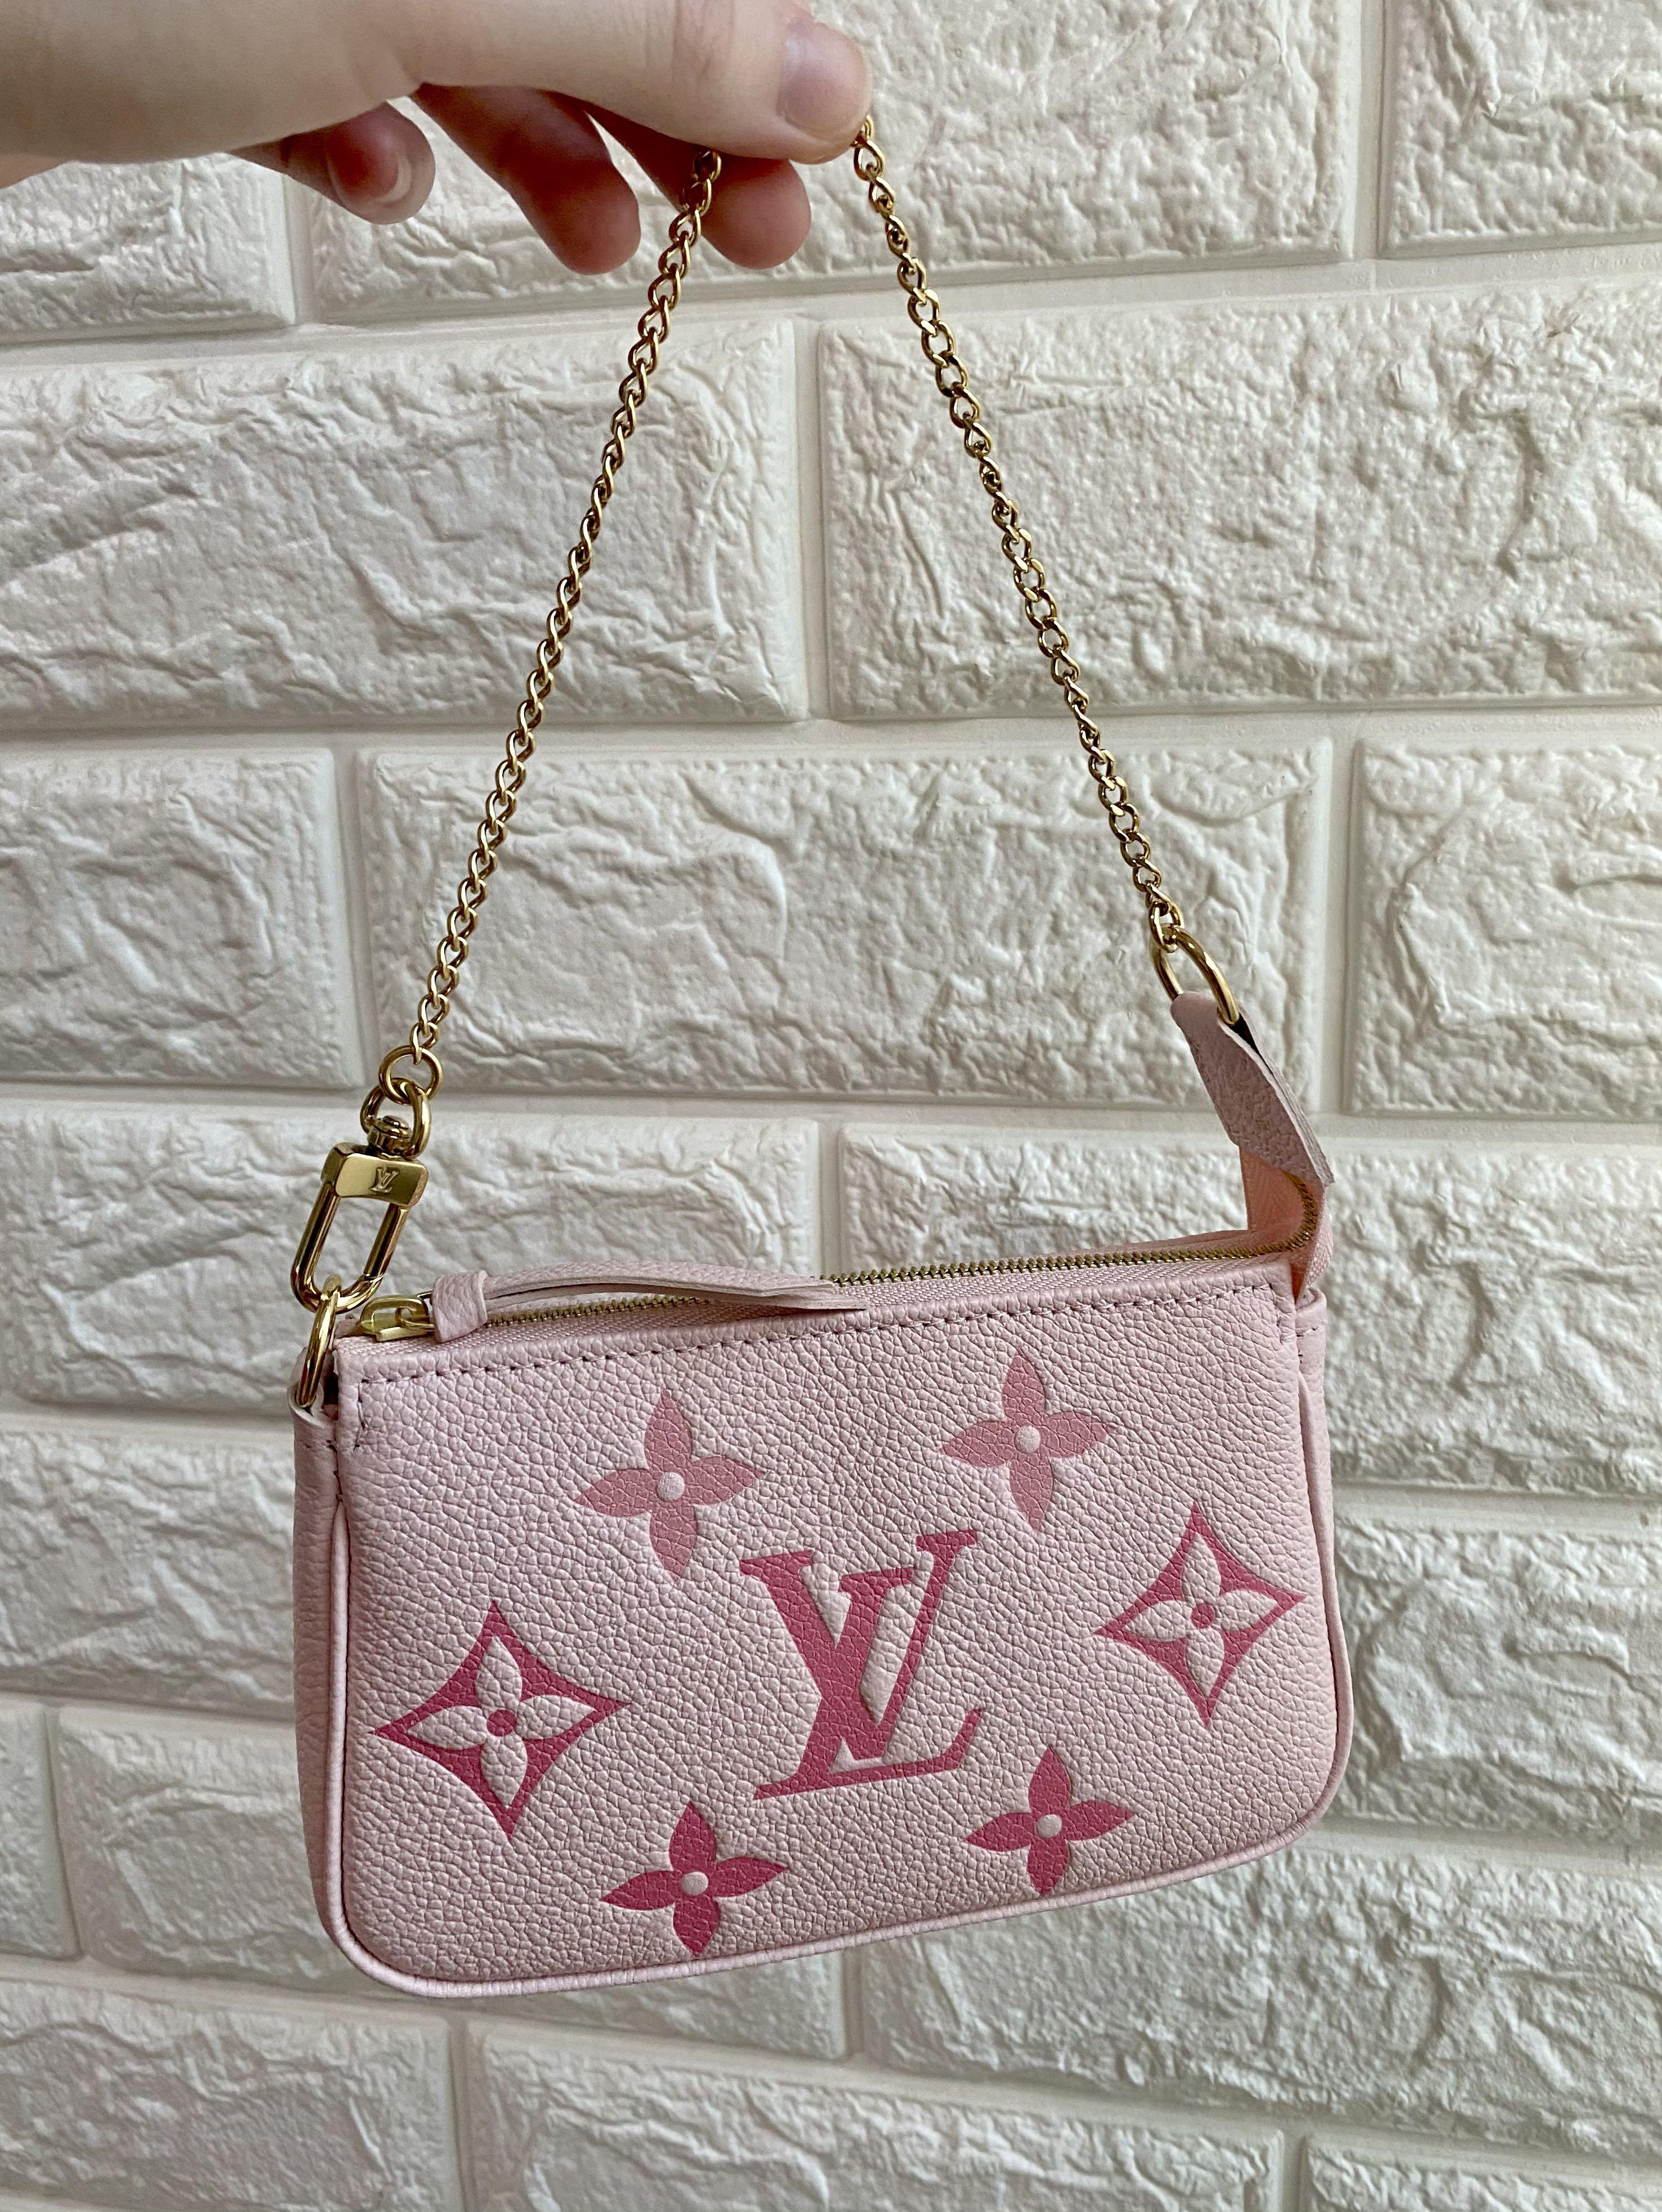 Mini pouchette bouton de rose  Bags, Louis vuitton accessories, Victoria  secret outfits